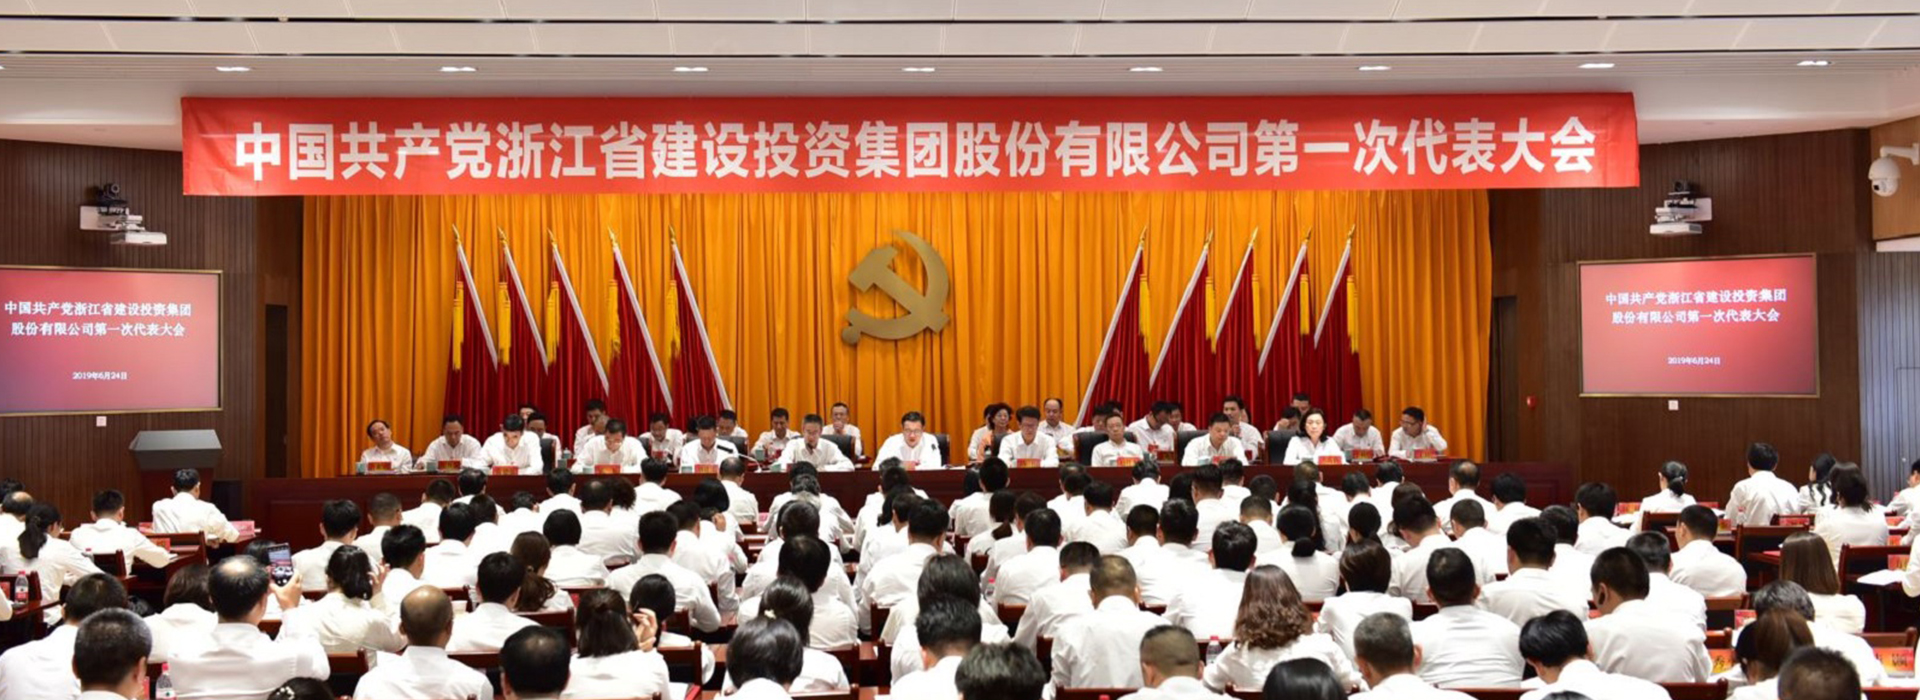 中国共产党浙江省建设投资集团股份有限公司第一次代表大会胜利召开